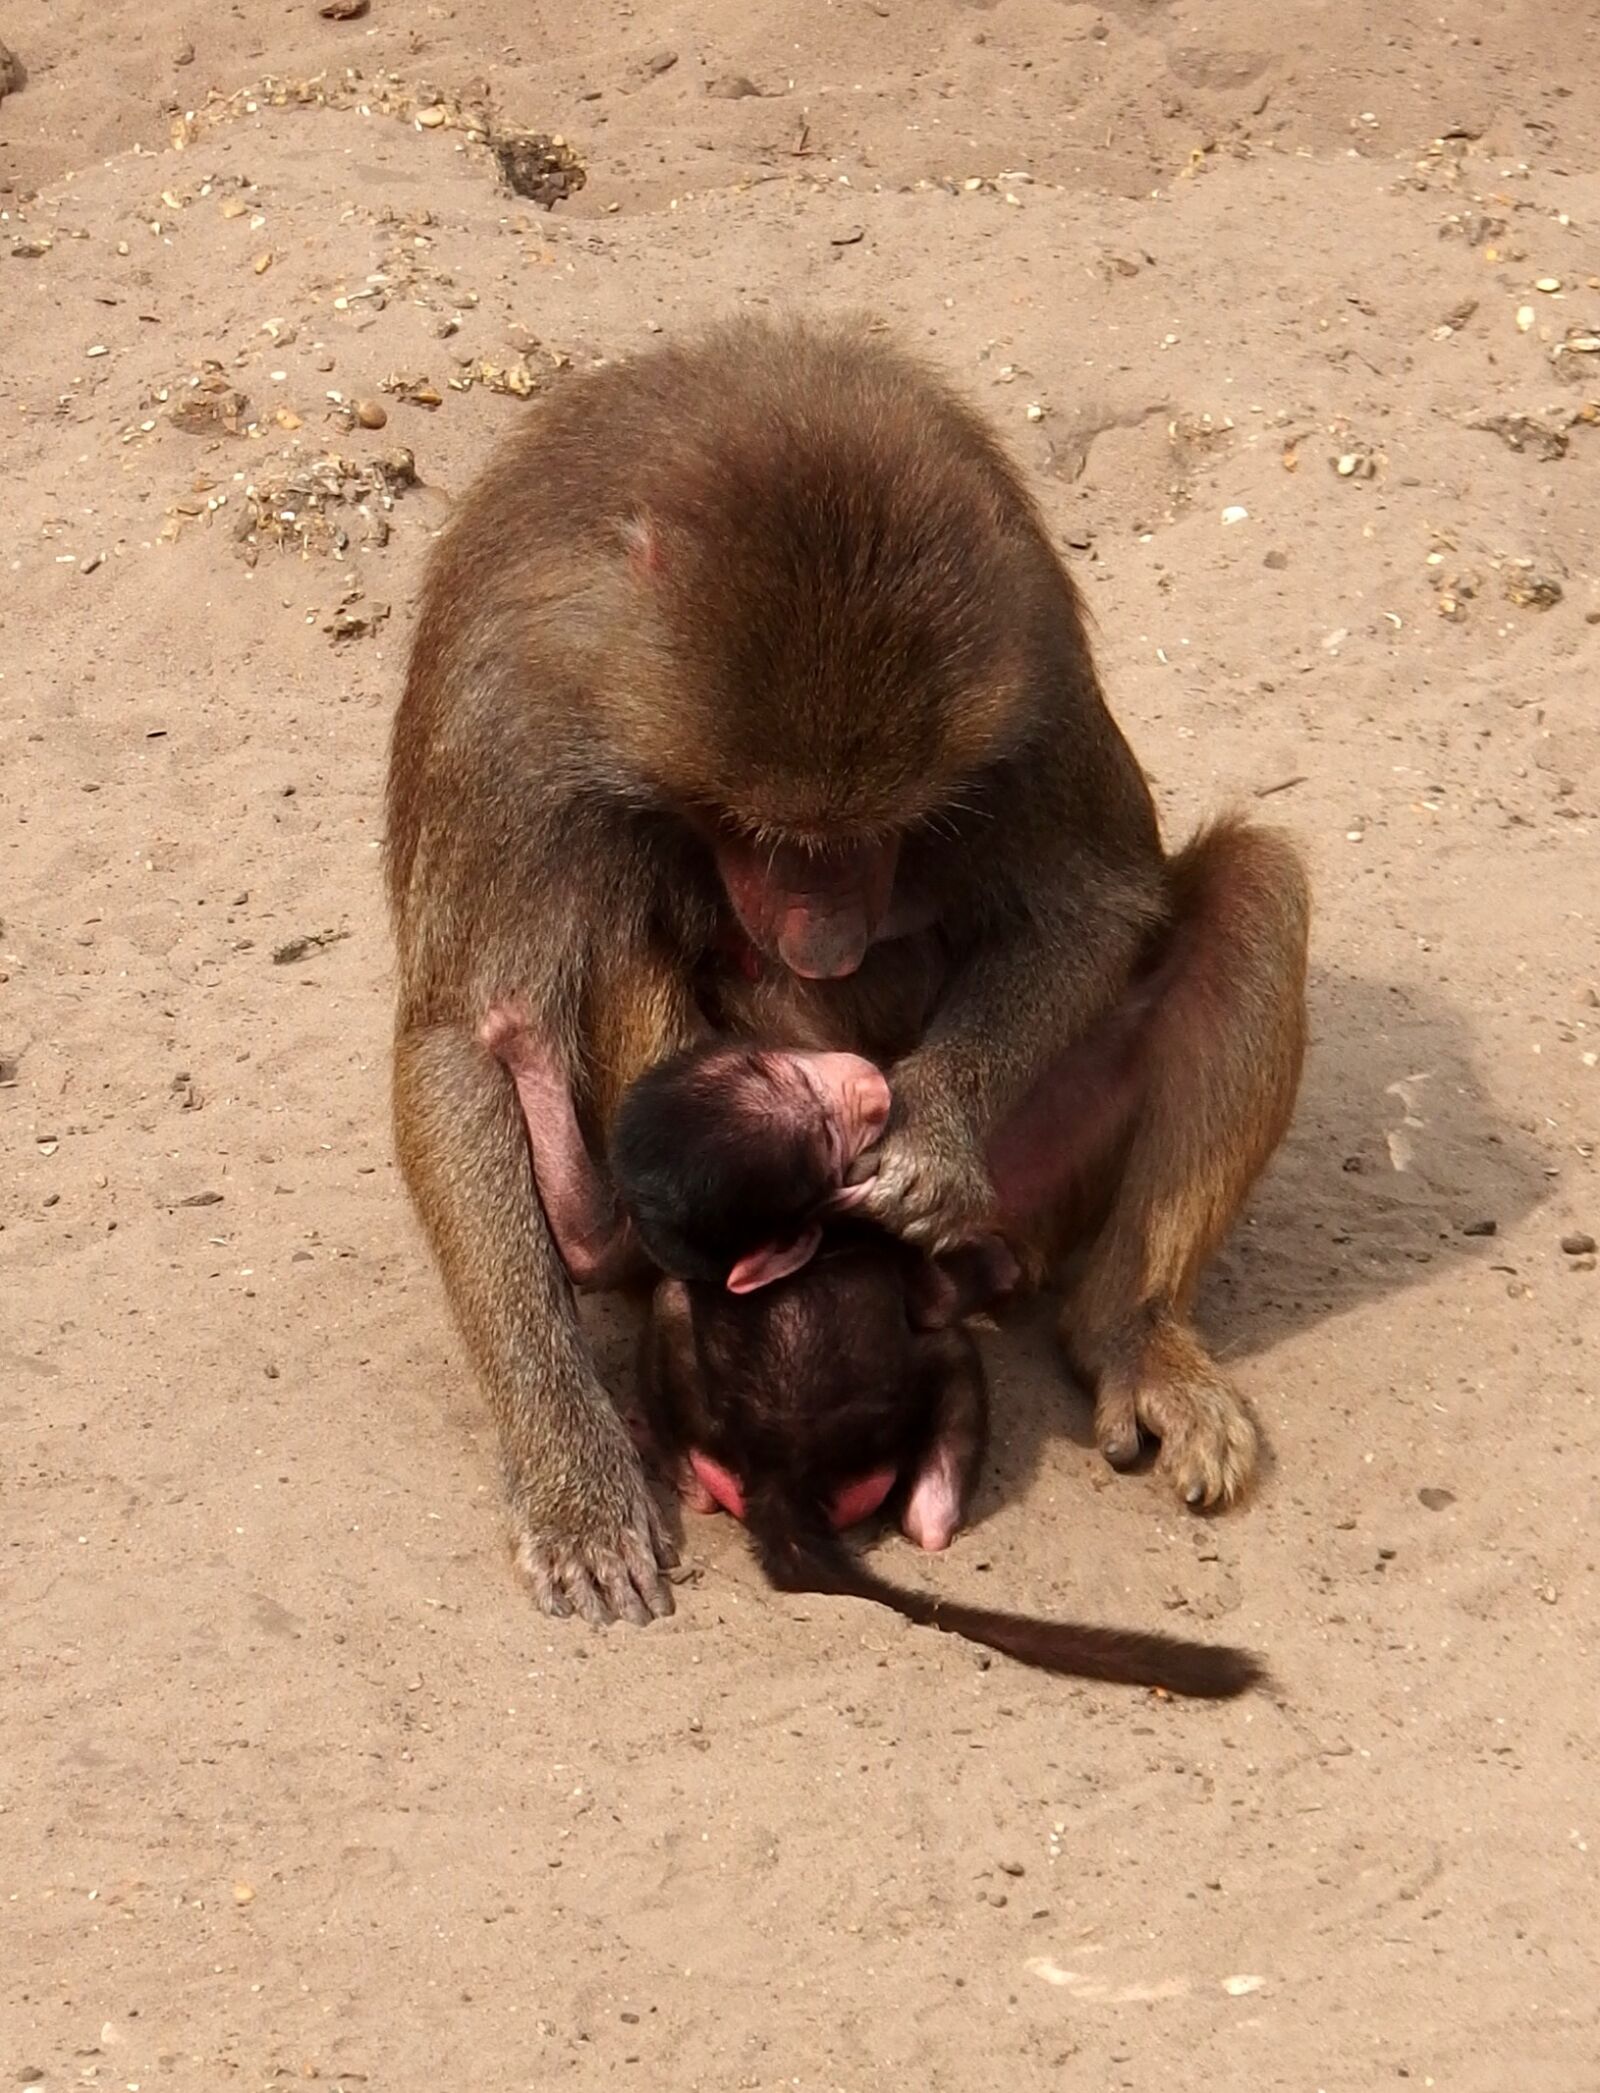 Olympus Stylus XZ-10 sample photo. Monkey, mother monkey, child photography